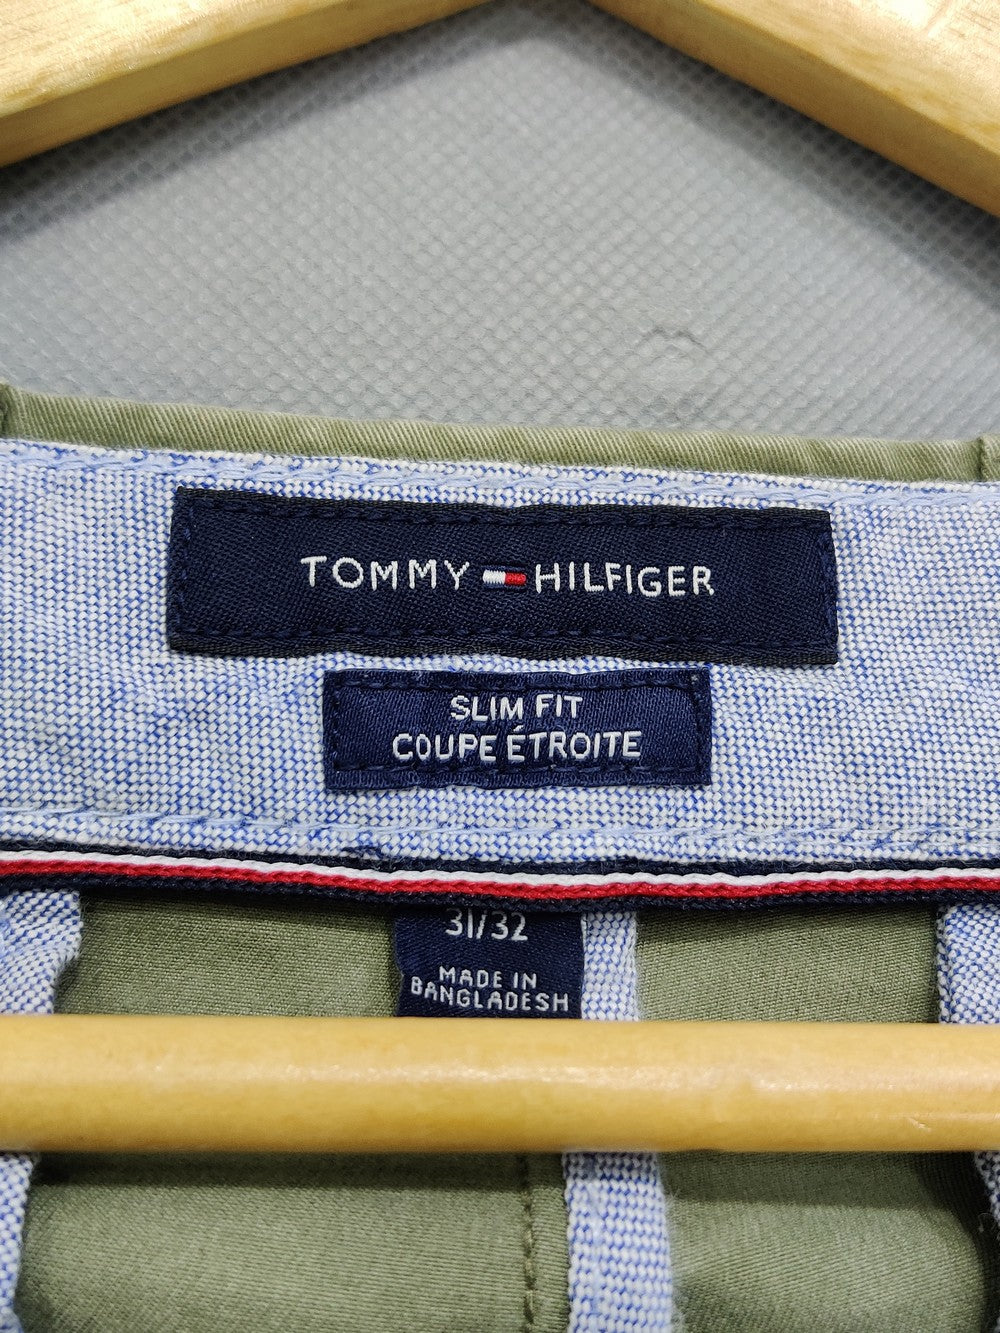 Tommy-Hilfiger Branded Original Cotton Dress Pant For Men